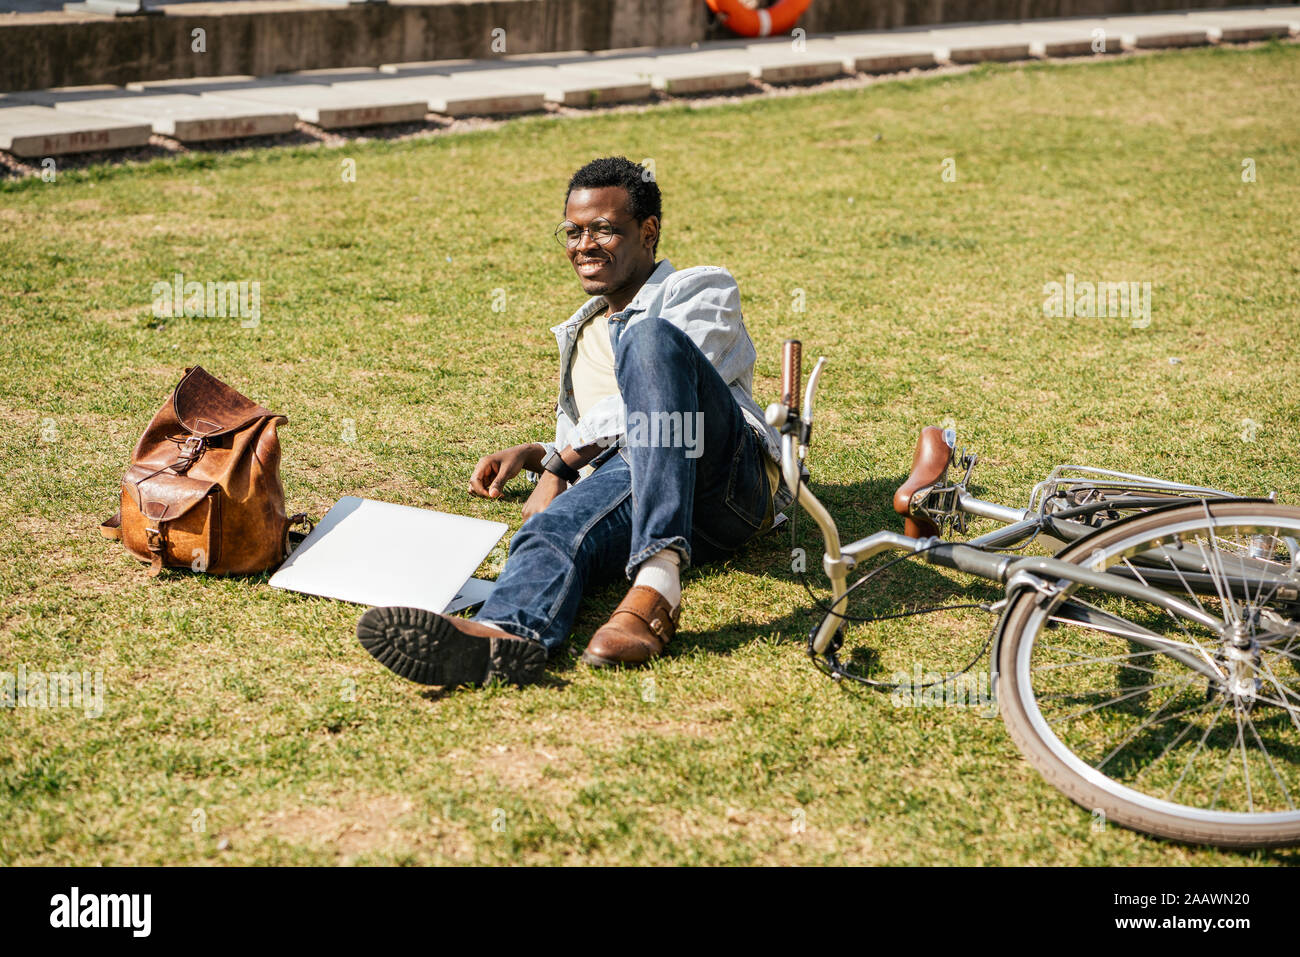 Jeune homme avec alptop et location, lying on grass Banque D'Images